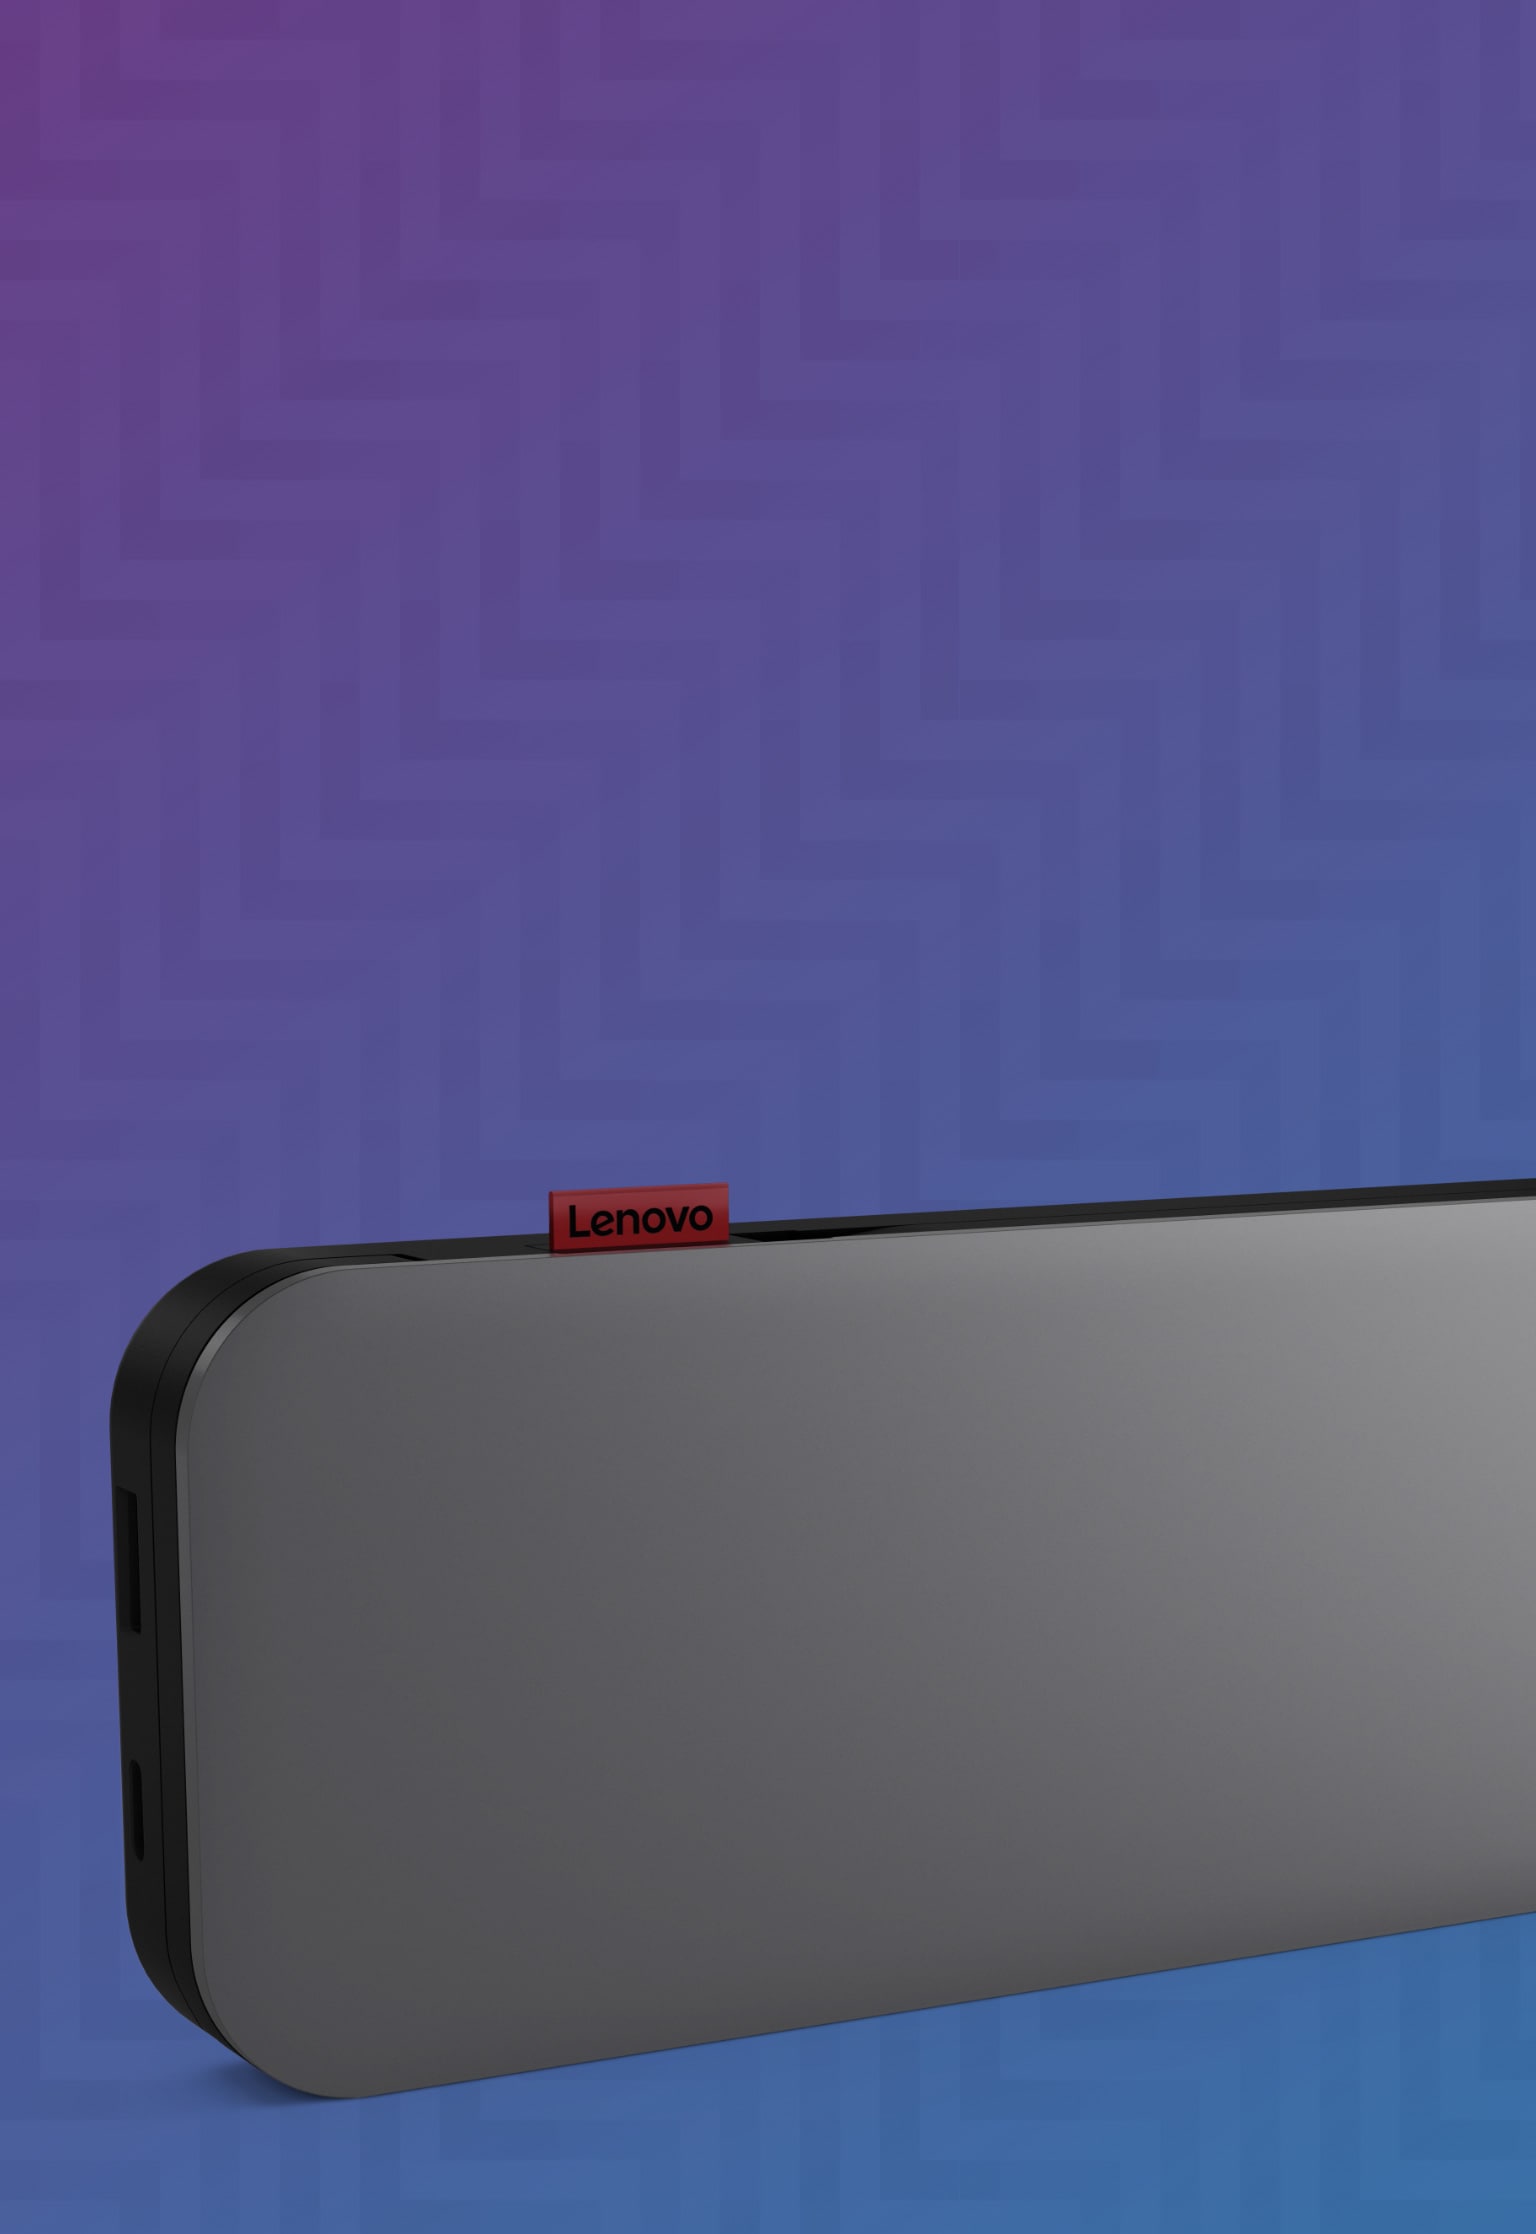  Cargador portátil USB-C para portátiles Lenovo Go (20 000 mAh)